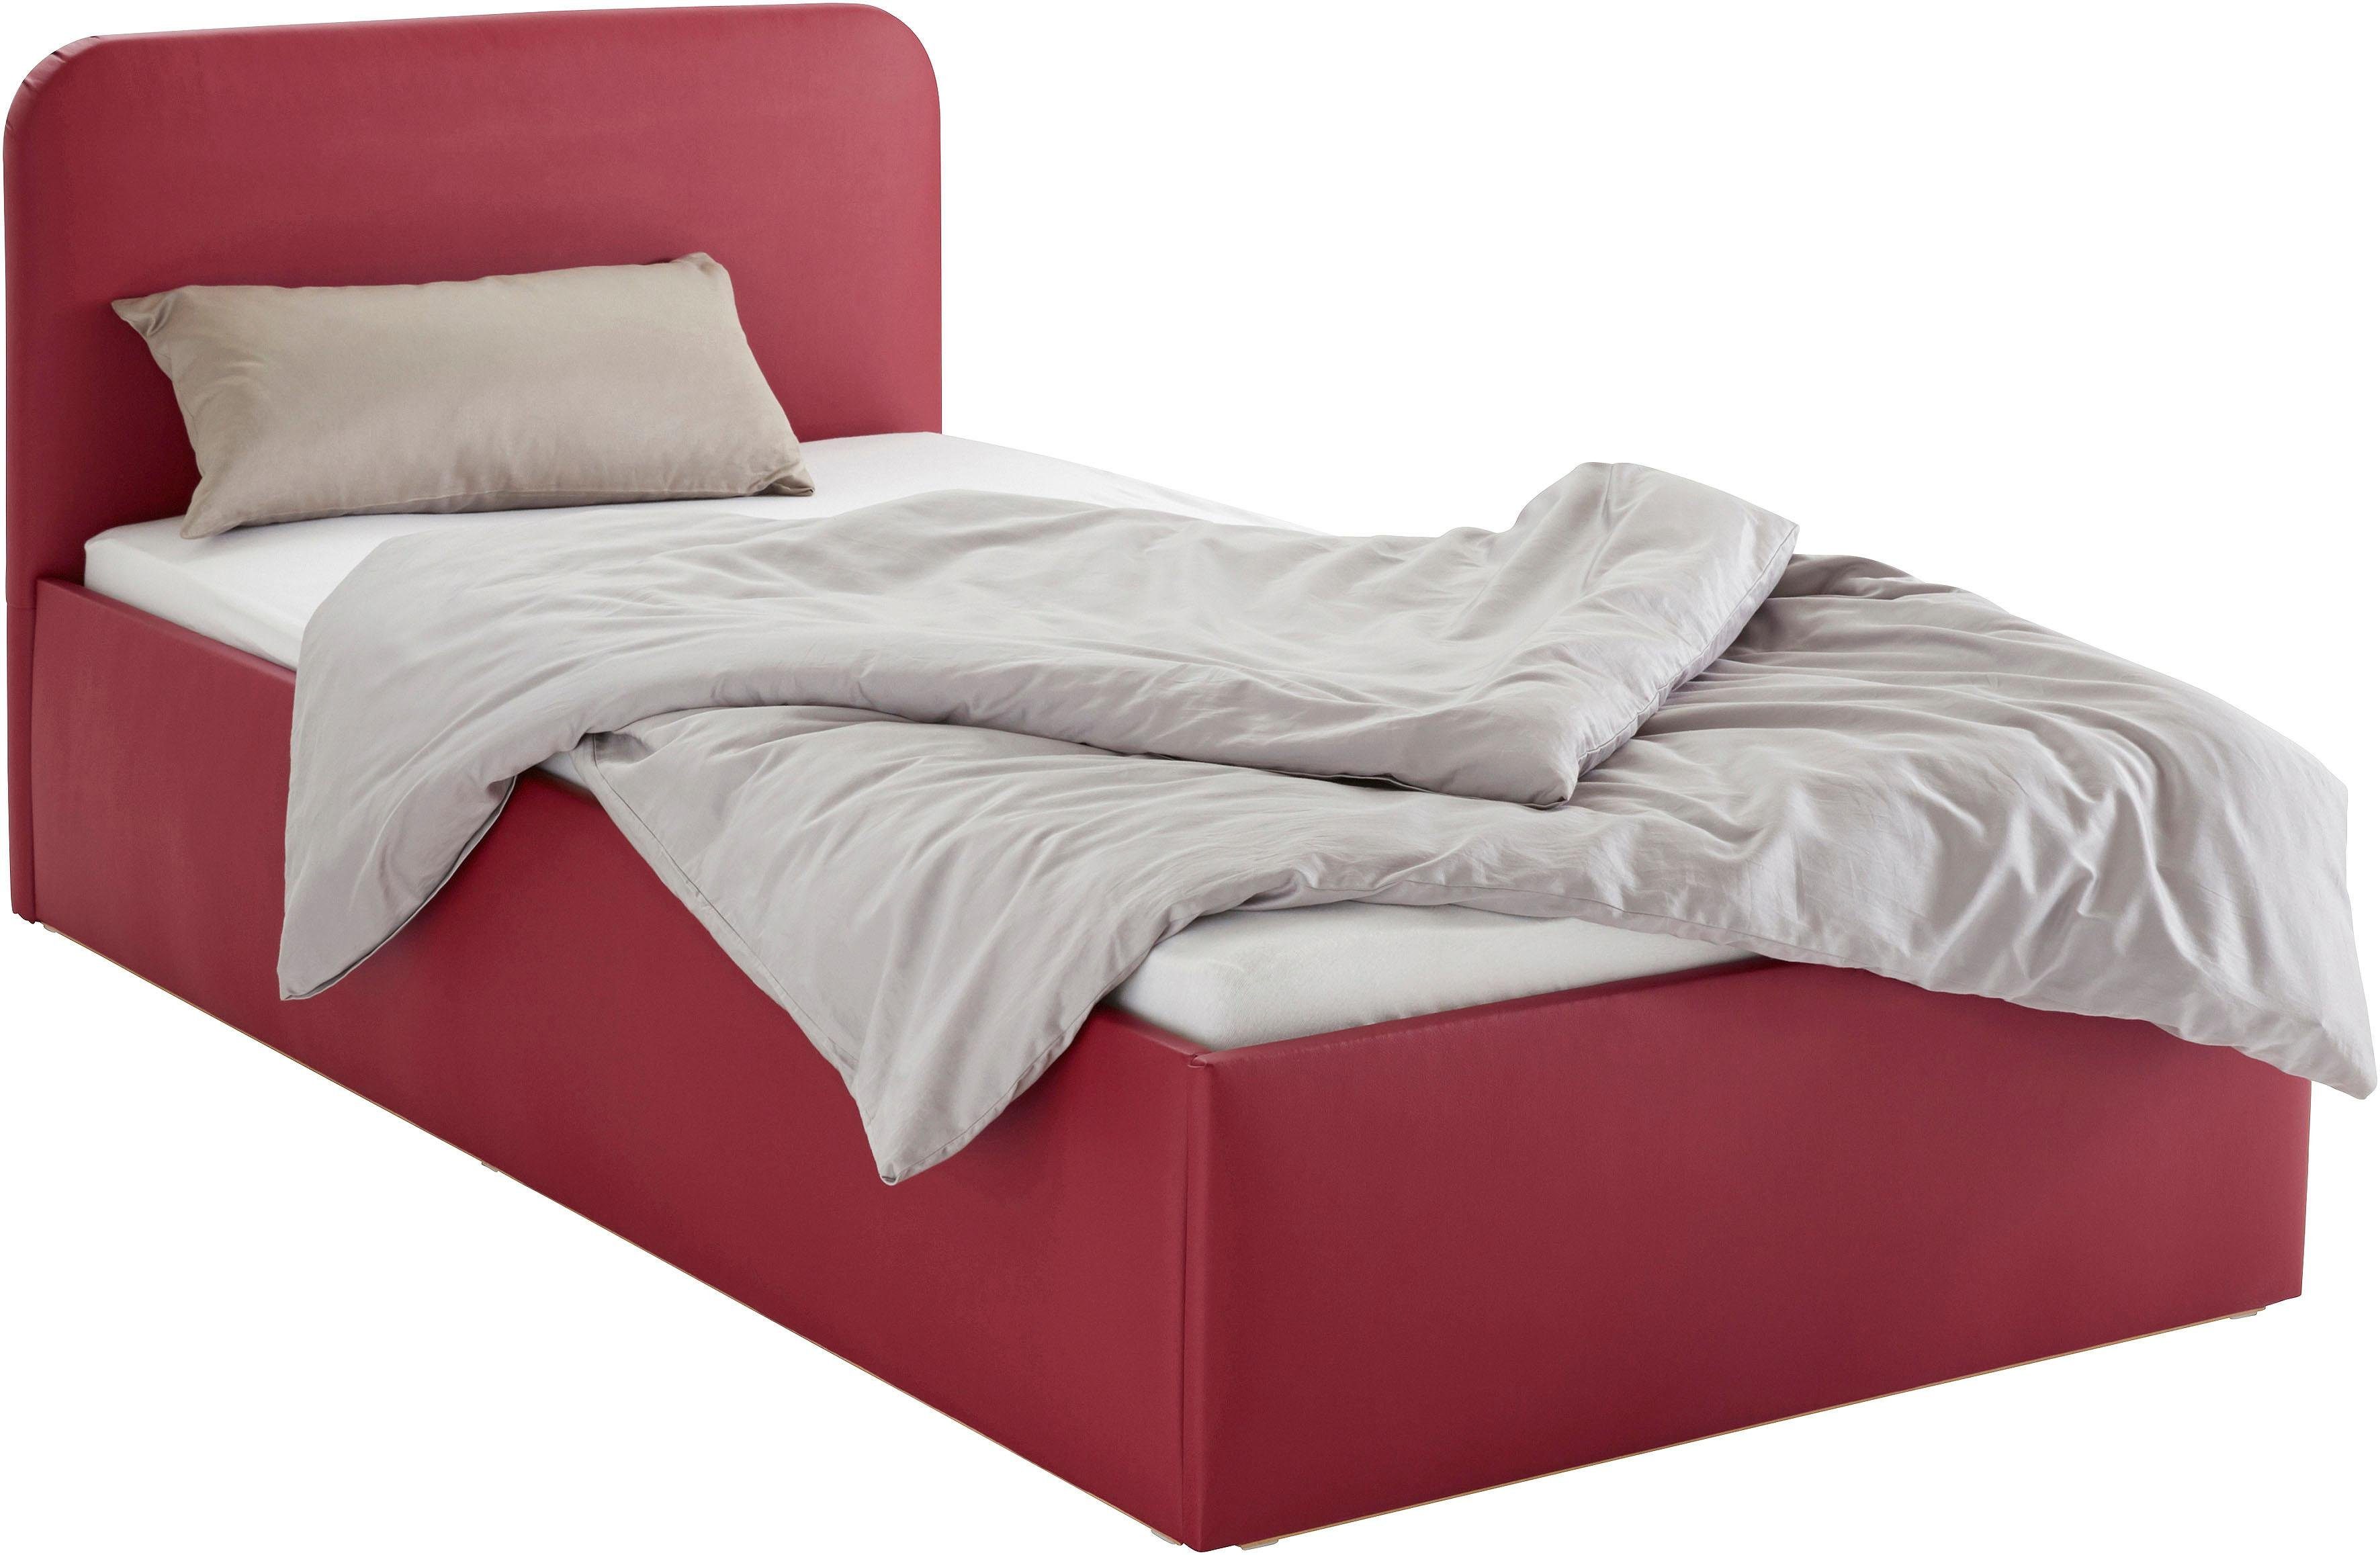 Westfalia Schlafkomfort Polsterbett, mit Ausführung Bettkasten Matratze bei inkl